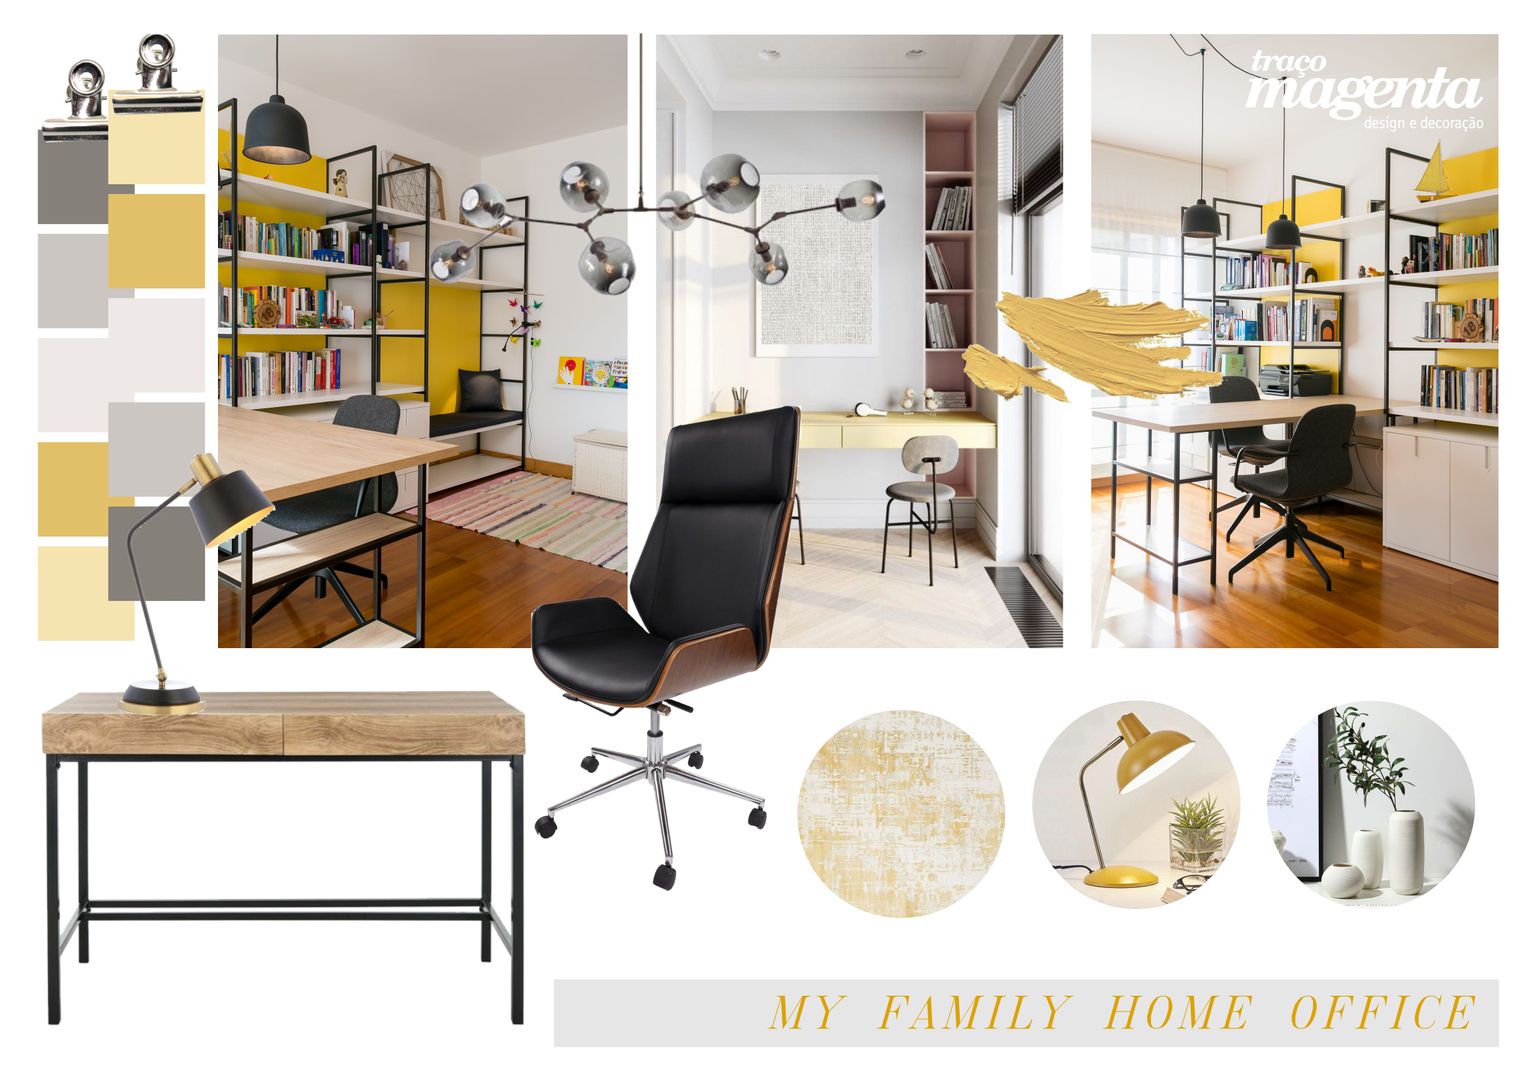 Home Office | Escritório em Casa, Traço Magenta - Design de Interiores Traço Magenta - Design de Interiores Study/office